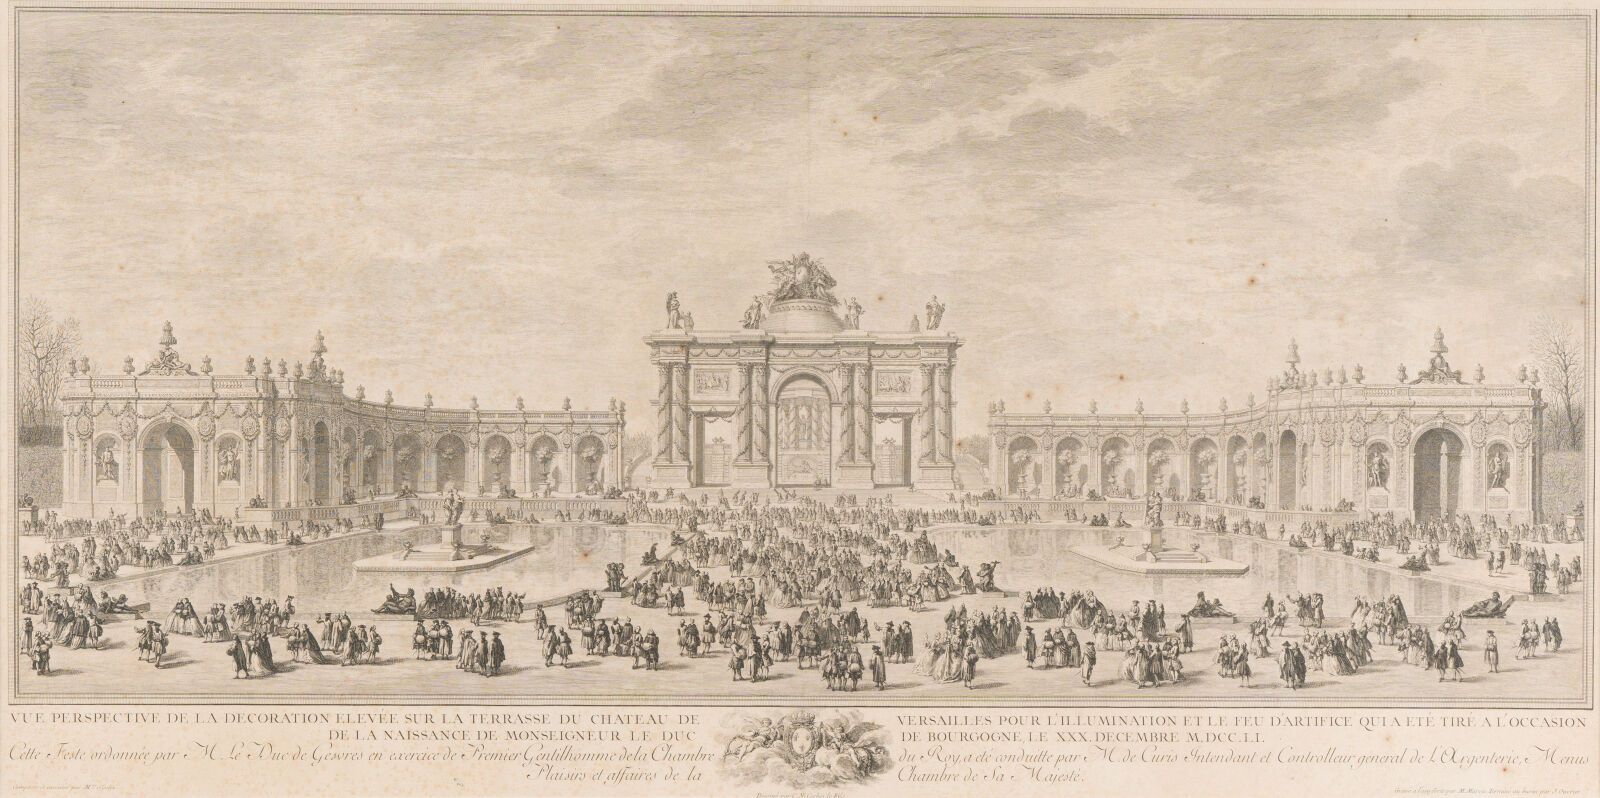 Null 2.在SLODTZ之后的黑色雕刻

凡尔赛宫的聚会，1751年12月30日

46 x 92 cm (见图)